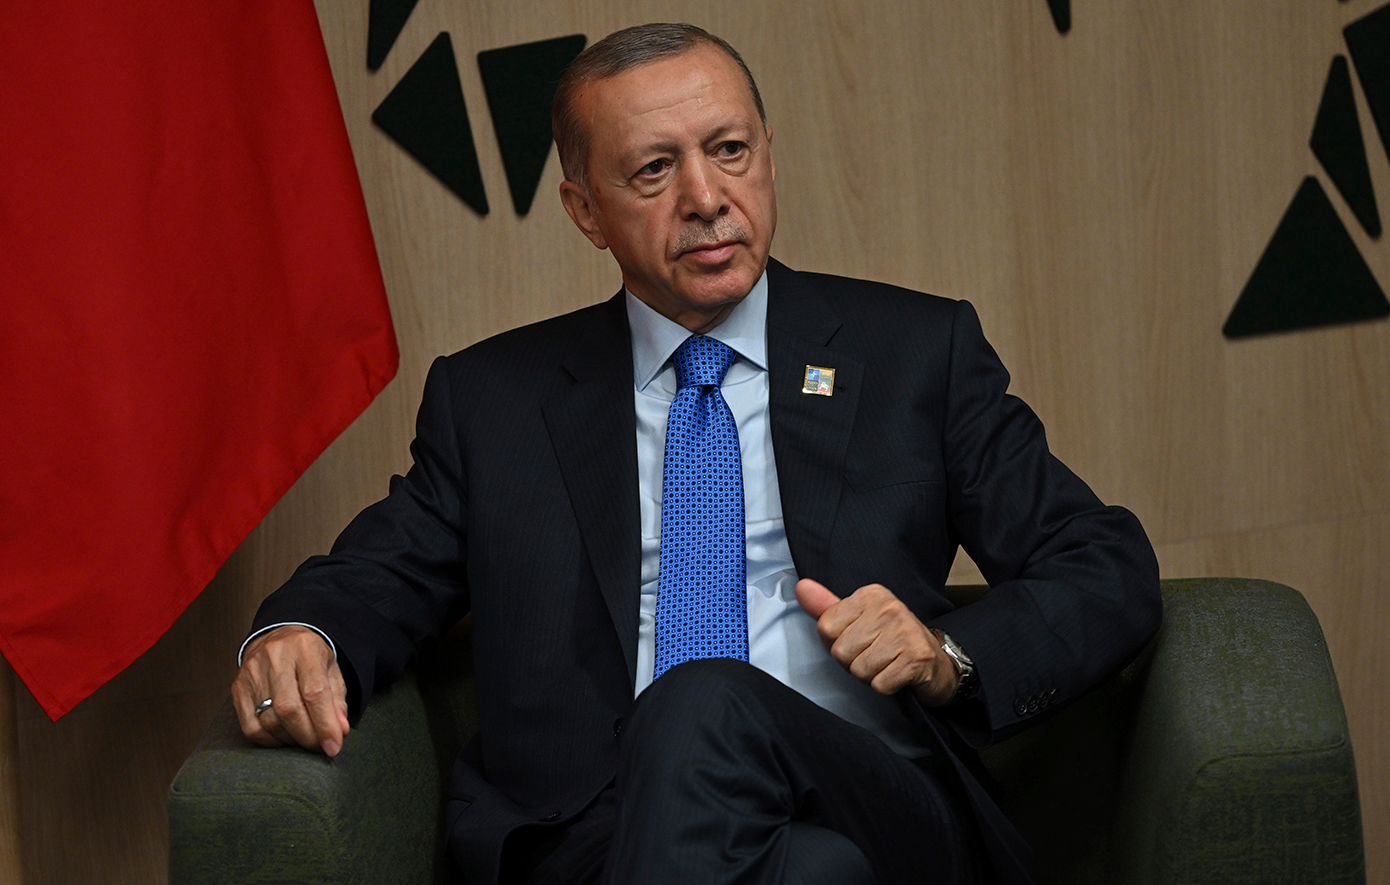 Ερντογάν: «Υπάρχουν θέματα που διαφωνούμε, αλλα είναι πολλά κι αυτά που συμφωνούμε»